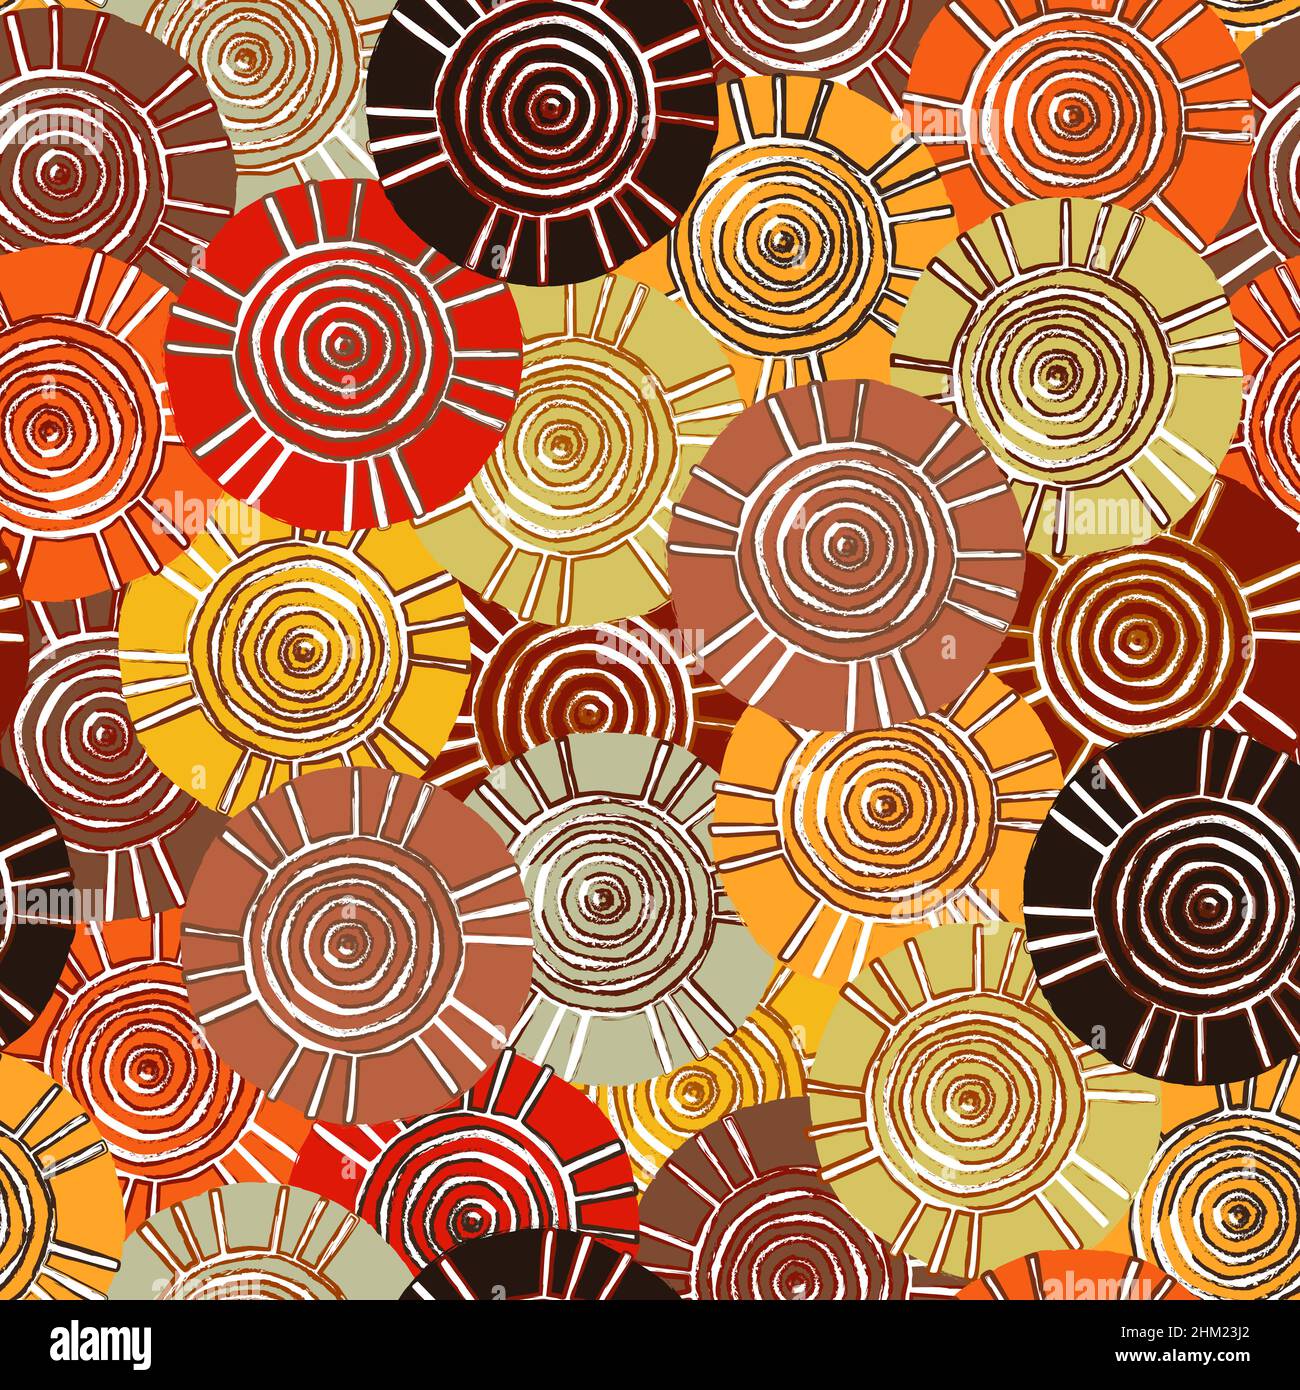 Kreisförmiges Stammesmuster mit Motiven der afrikanischen Stämme Surma und Mursi; nahtlose Textur geeignet für Print, Textil, Tapete, Hintergrund oder Station Stockfoto